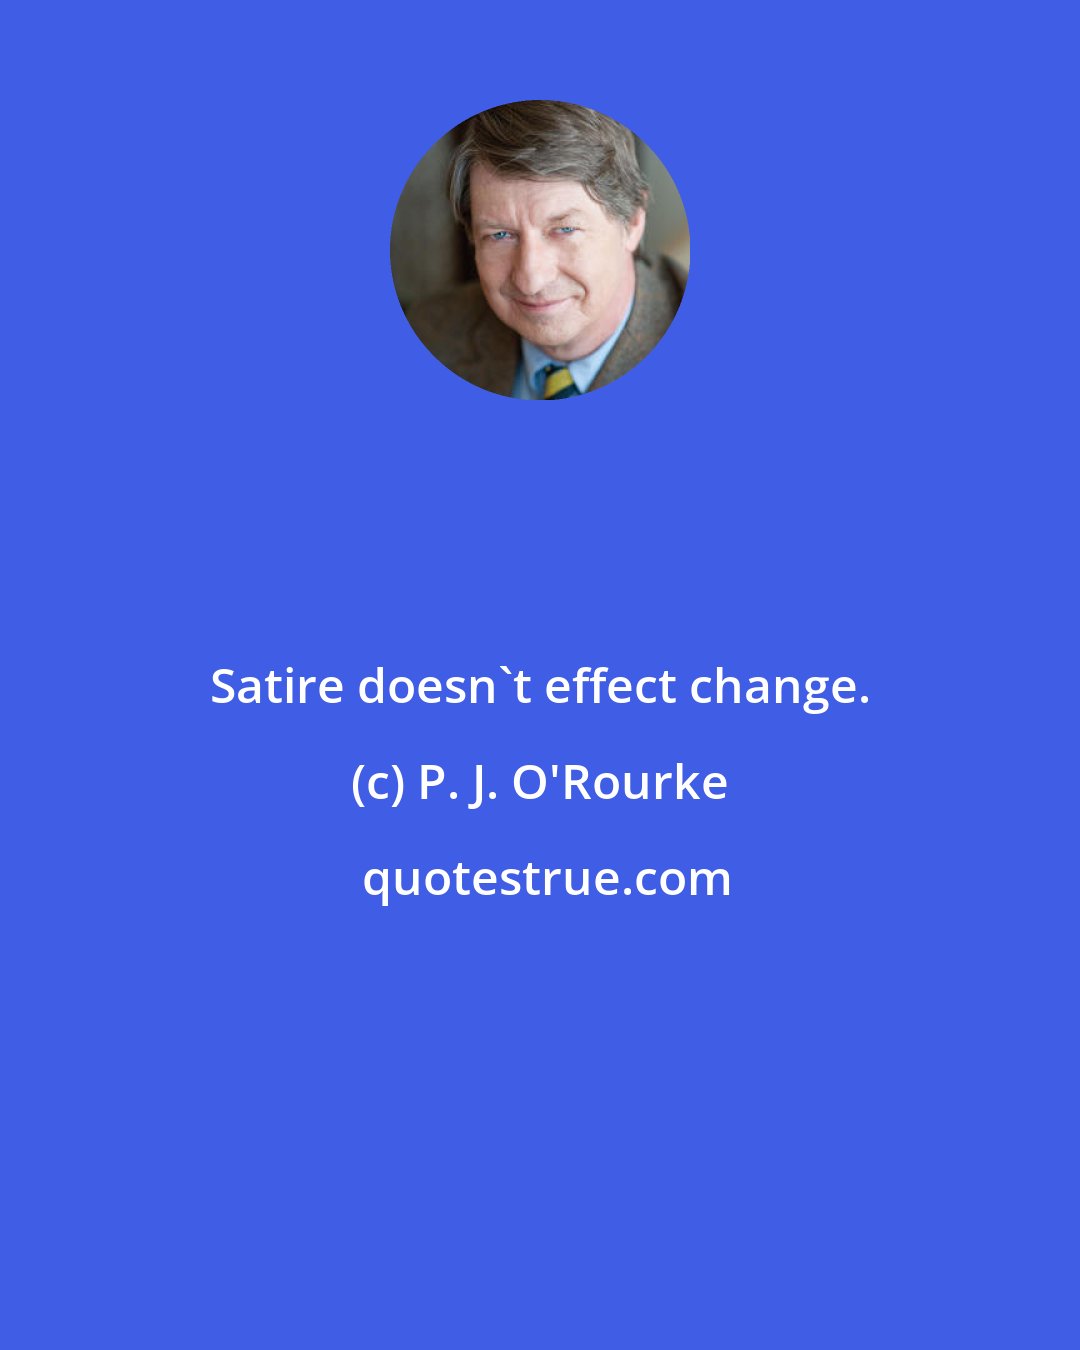 P. J. O'Rourke: Satire doesn't effect change.